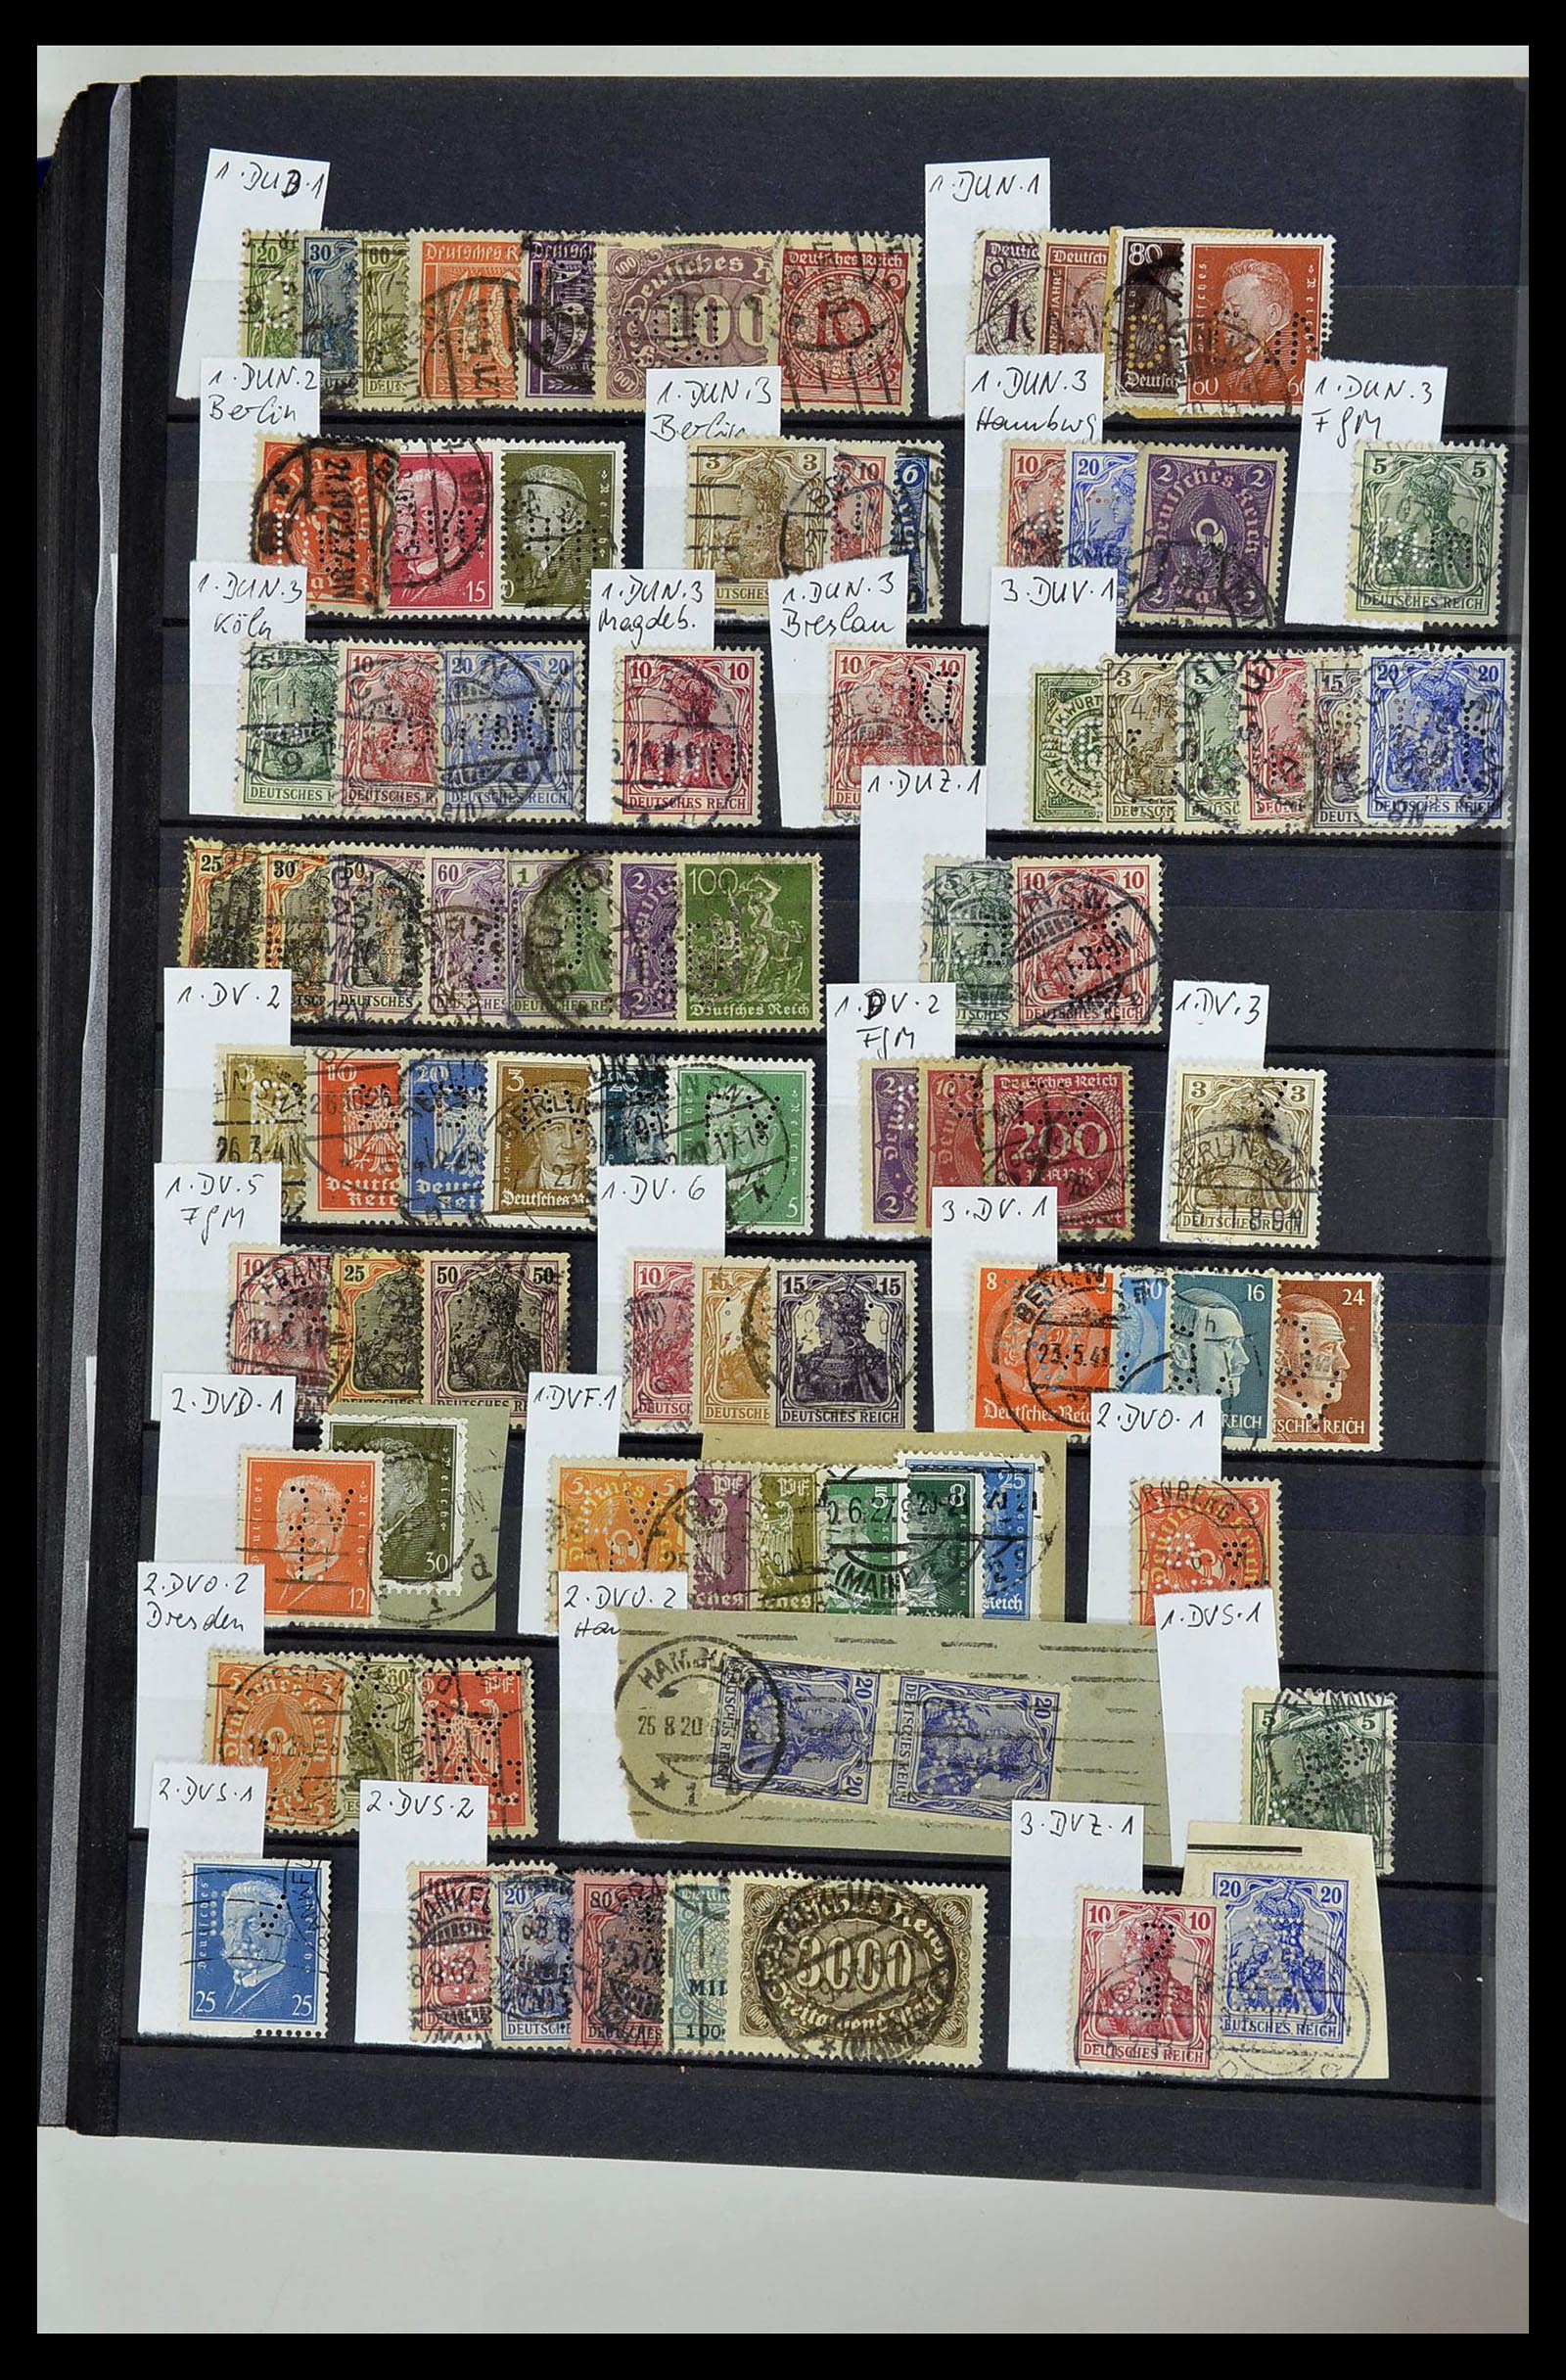 34432 105 - Stamp Collection 34432 German Reich perfins 1900-1933.